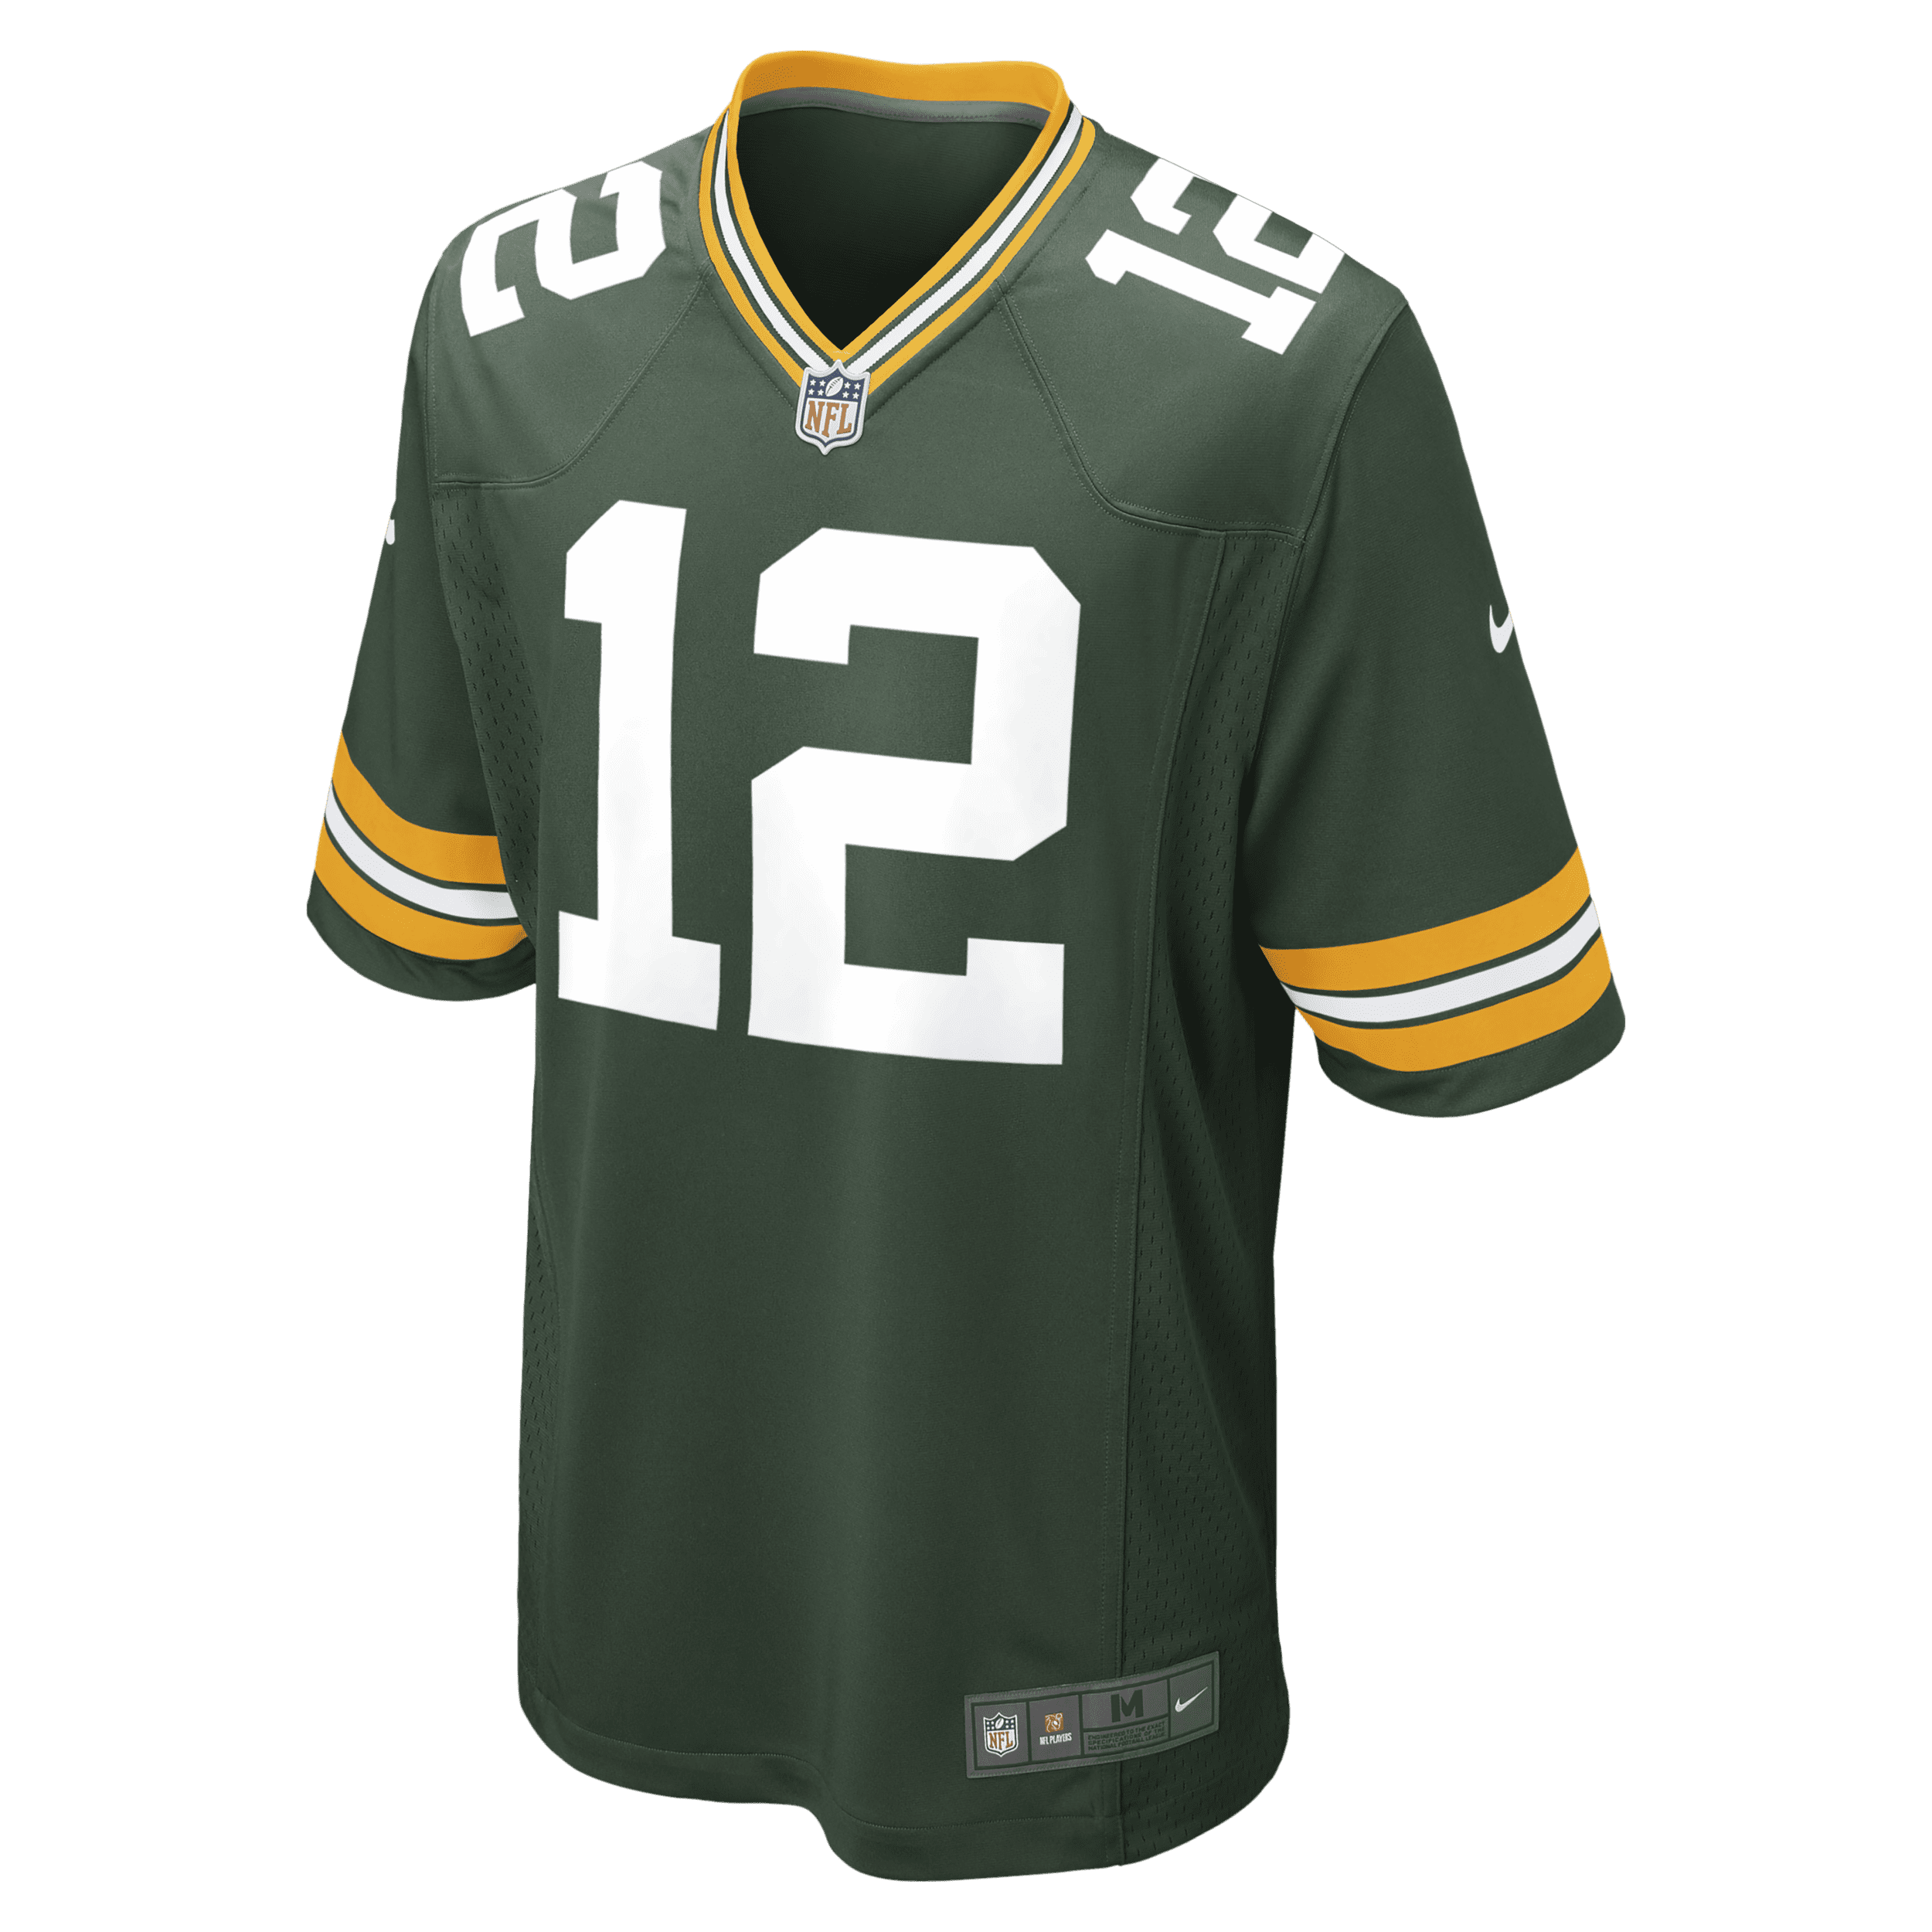 Nike NFL Green Bay Packers Aaron Rodgers-spillertrøje til mænd - grøn